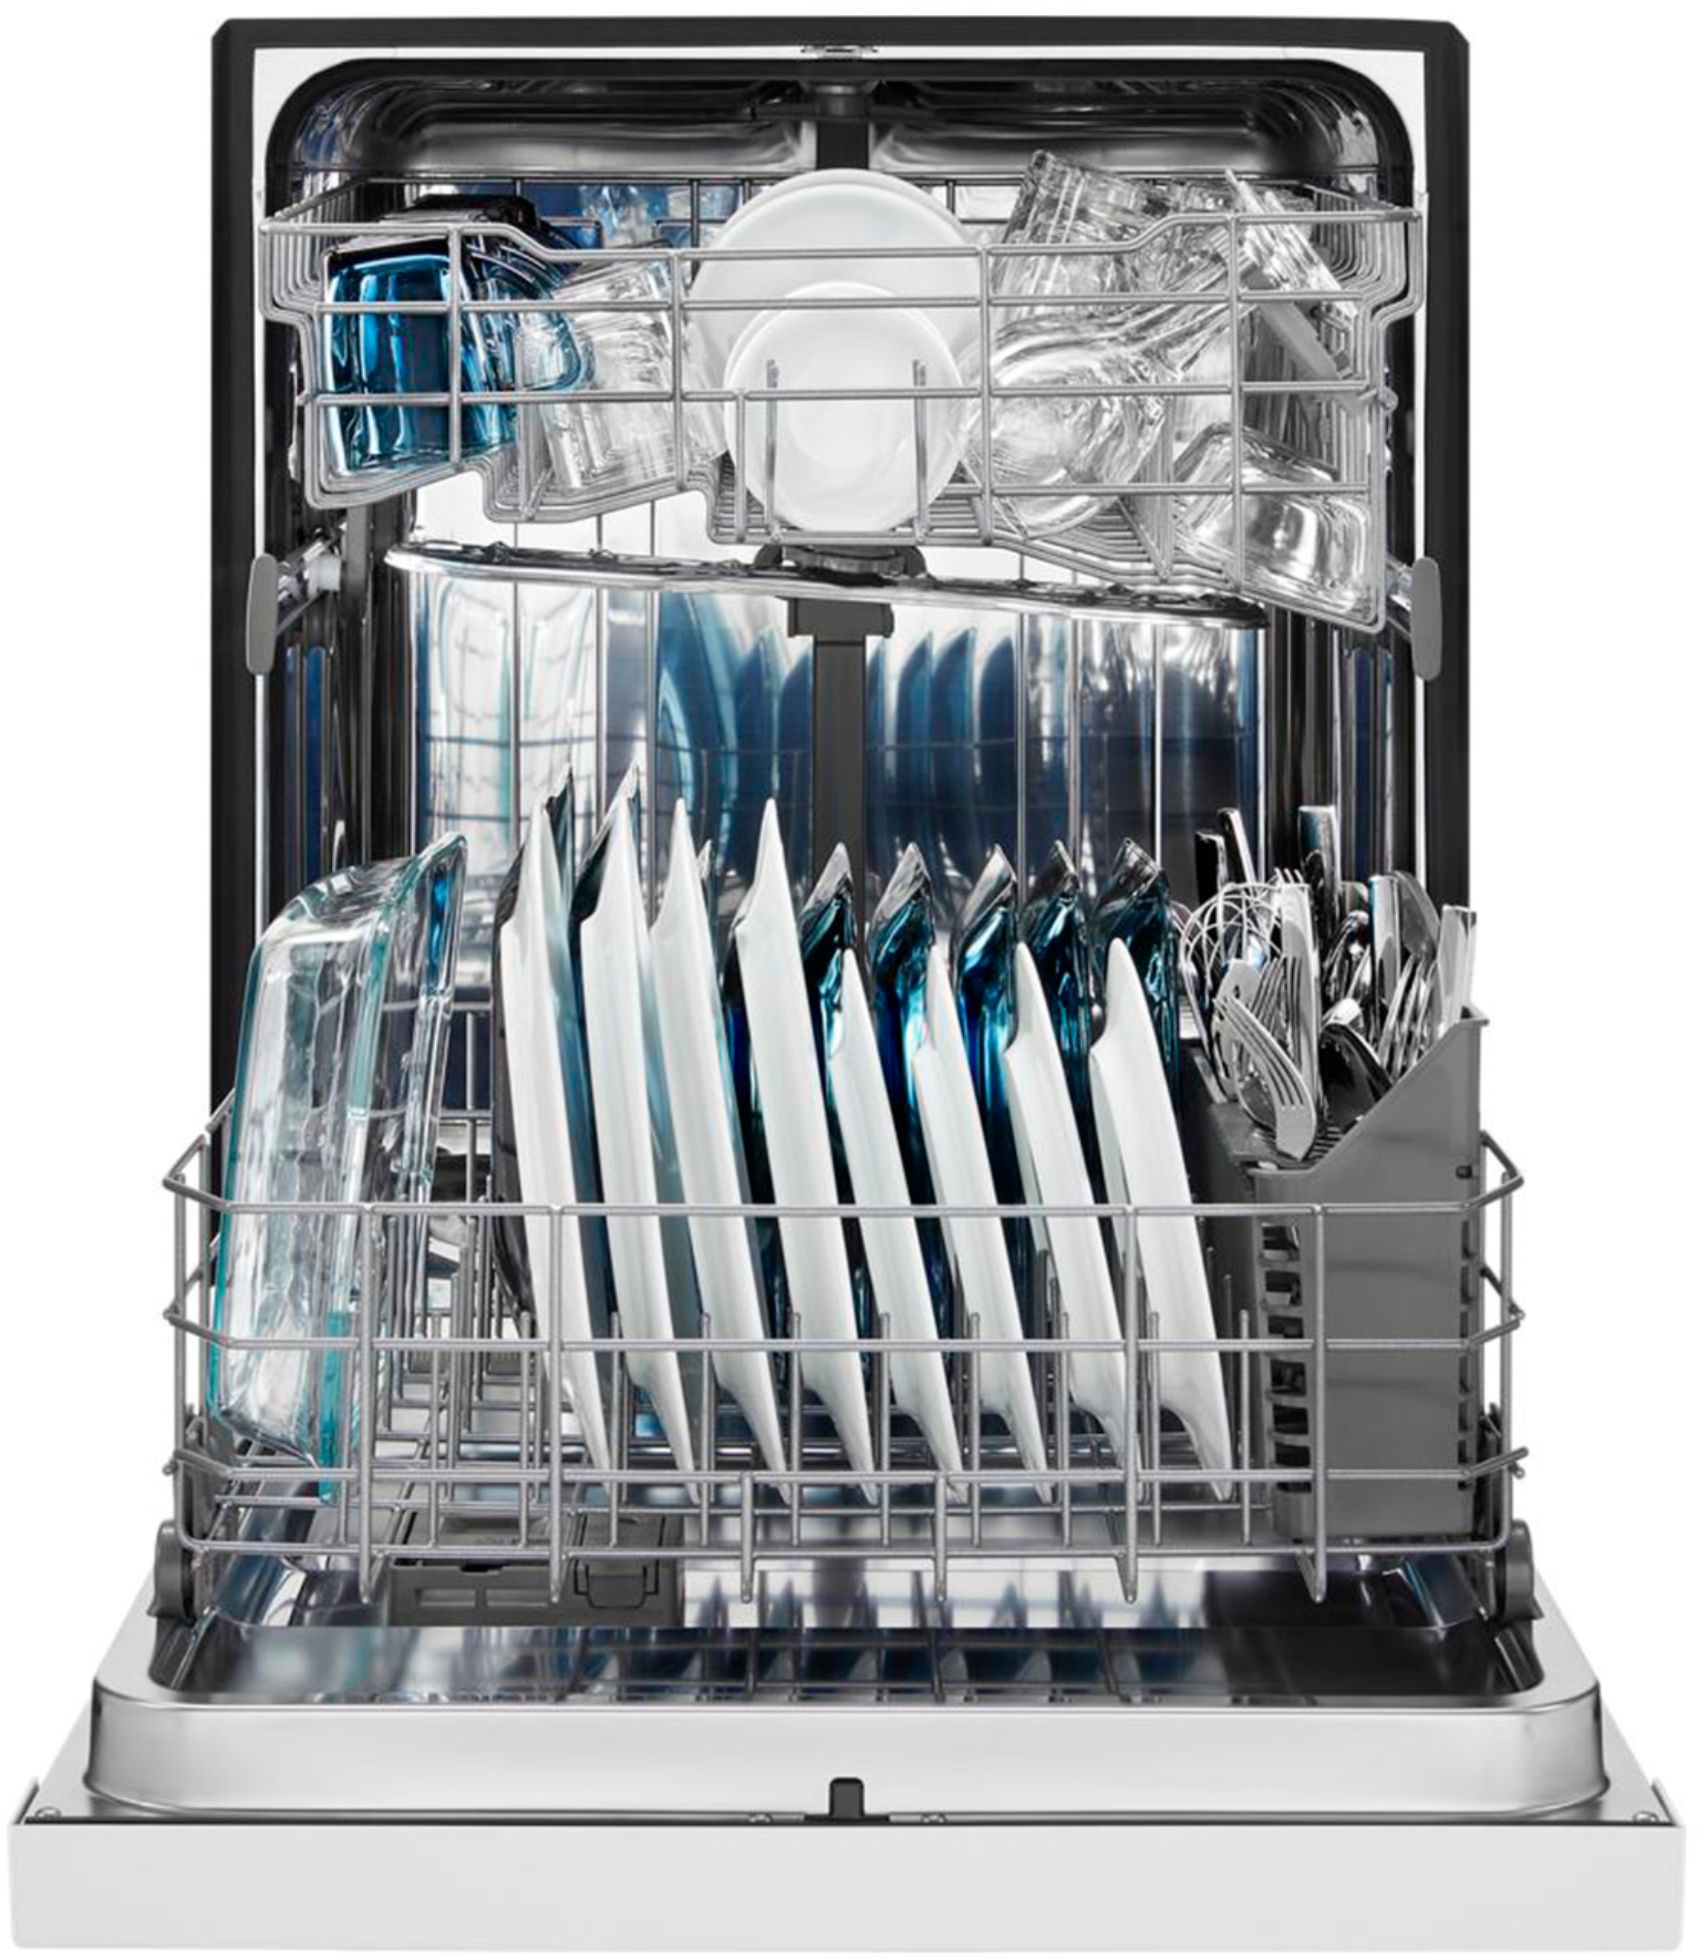 maytag dishwasher mdb4949sdz reviews